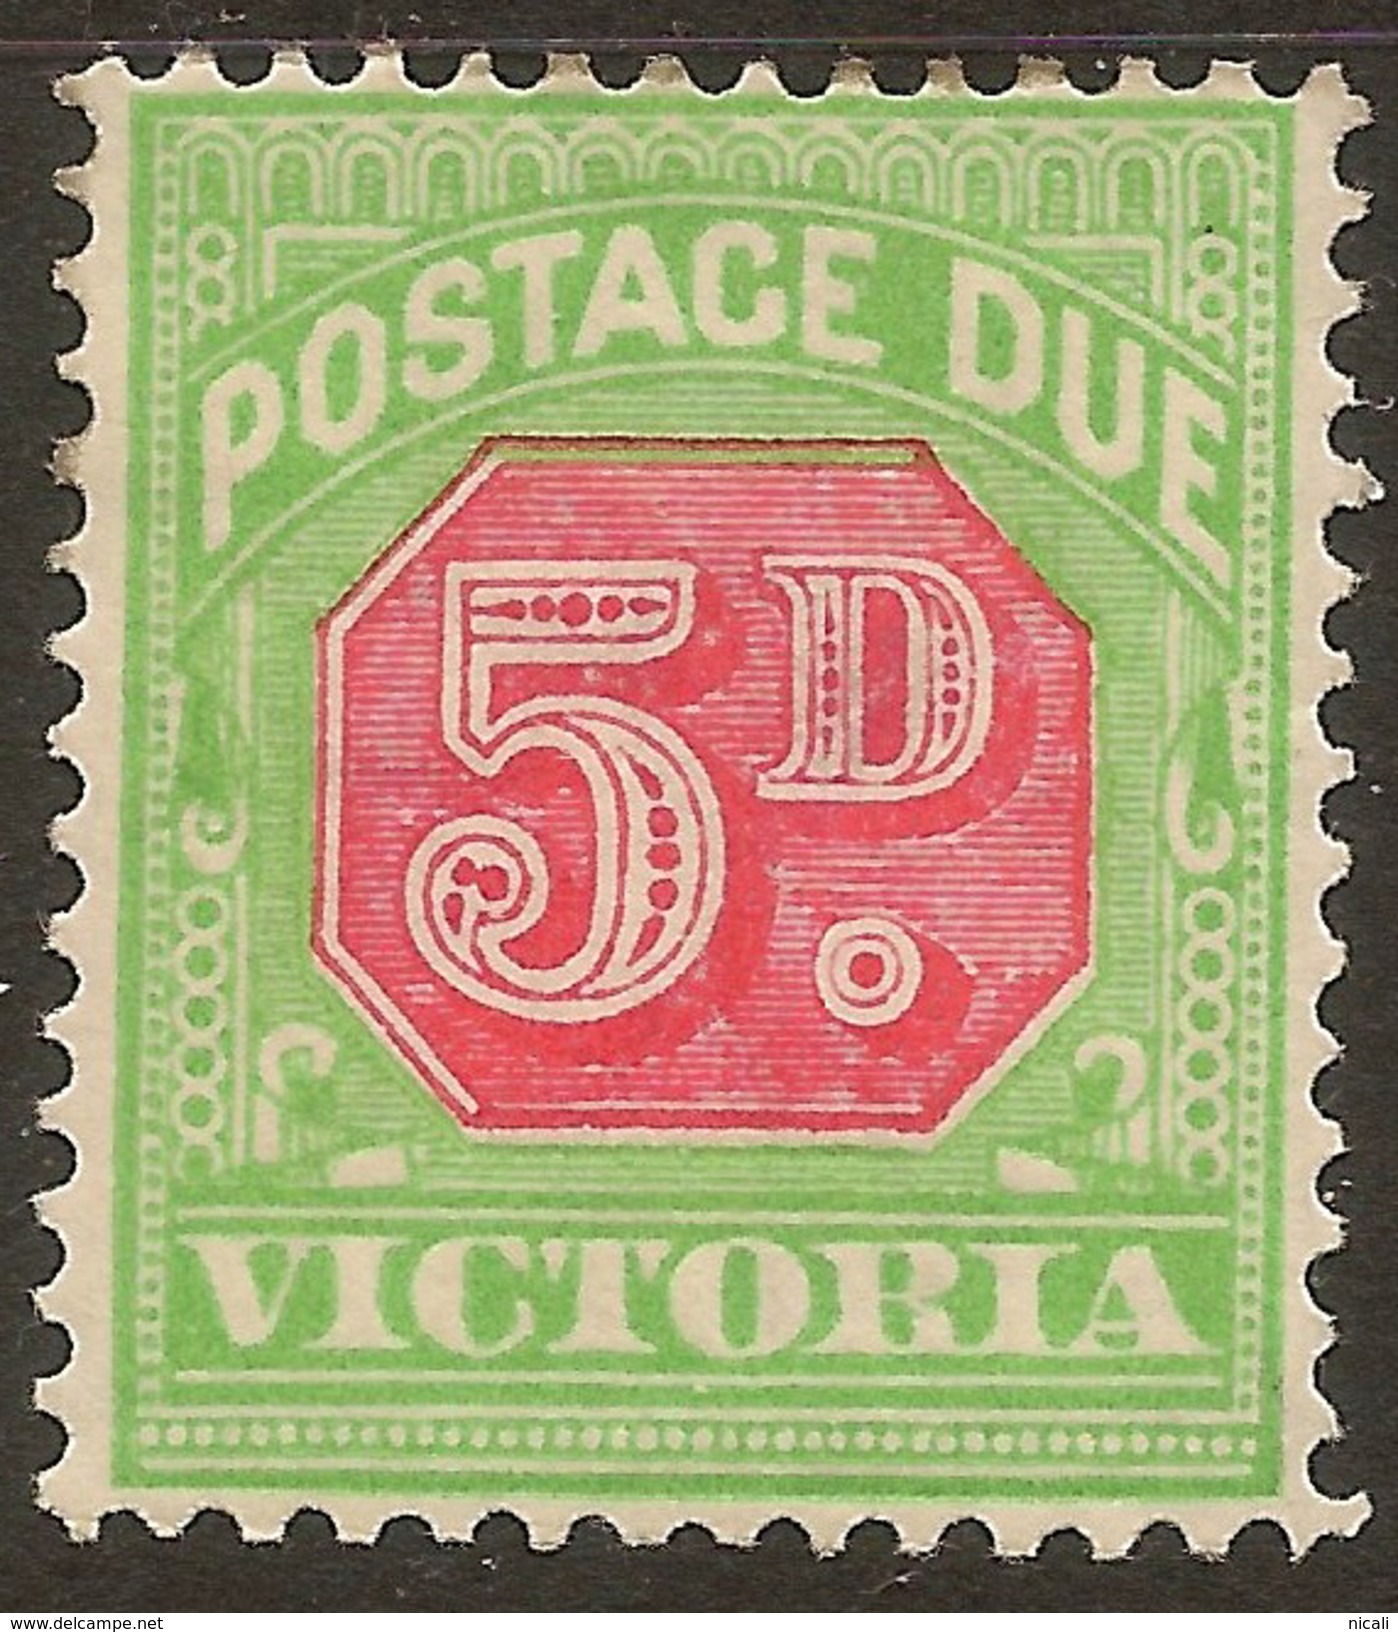 VICTORIA 1895 5d Postage Due SG D15a HM #ABI328 - Mint Stamps